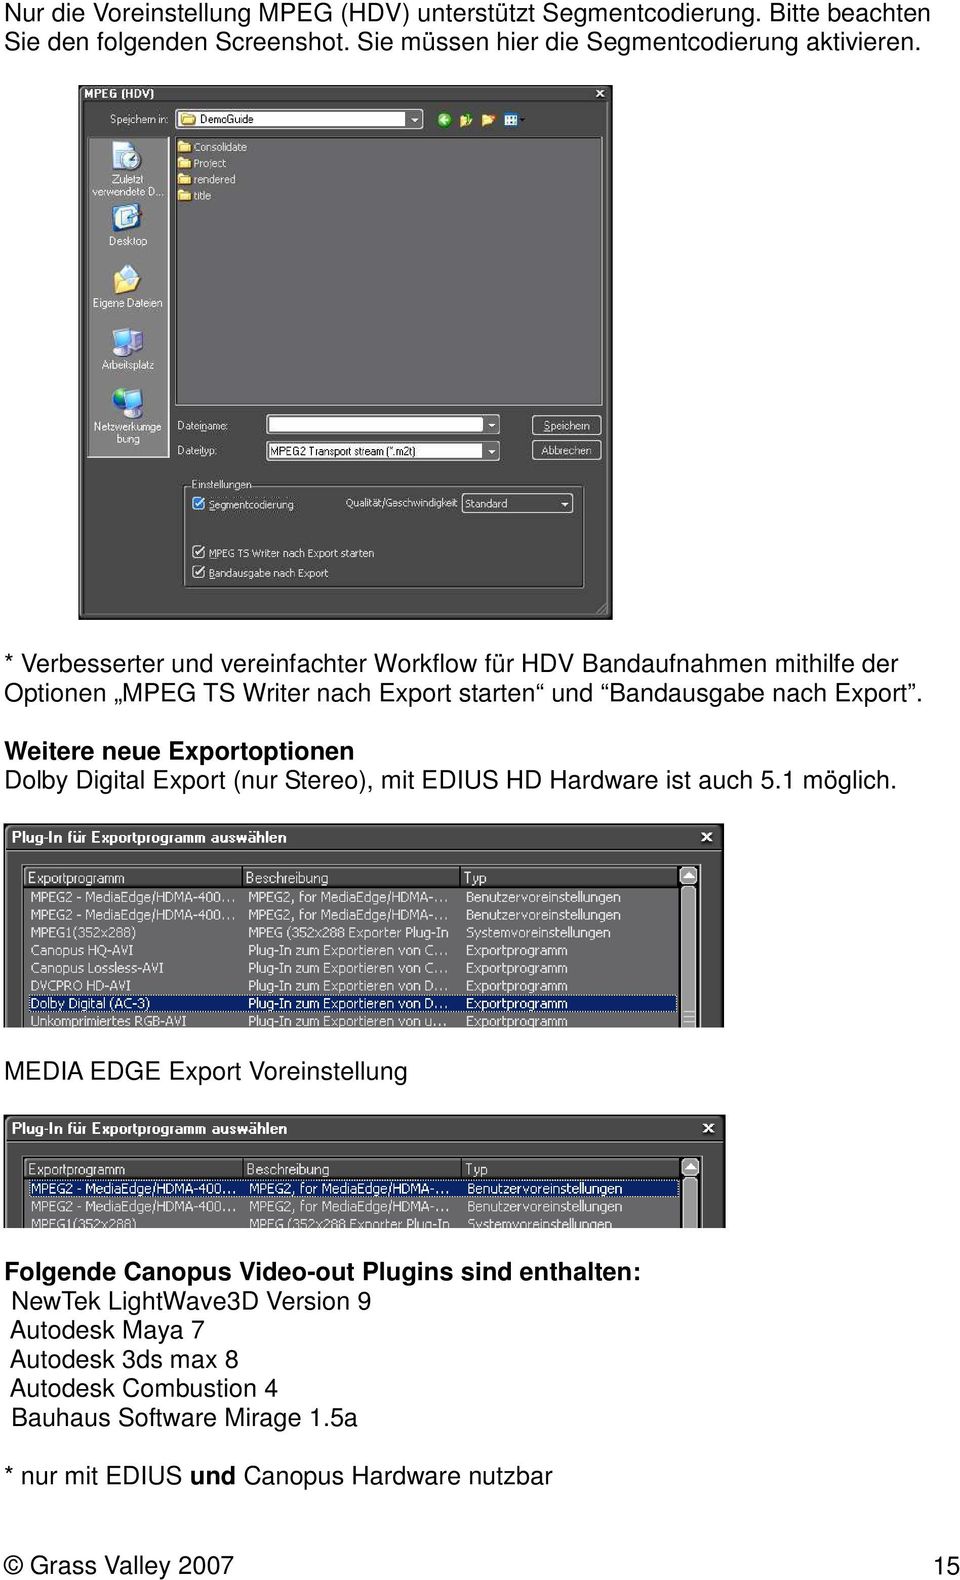 Weitere neue Exportoptionen Dolby Digital Export (nur Stereo), mit EDIUS HD Hardware ist auch 5.1 möglich.